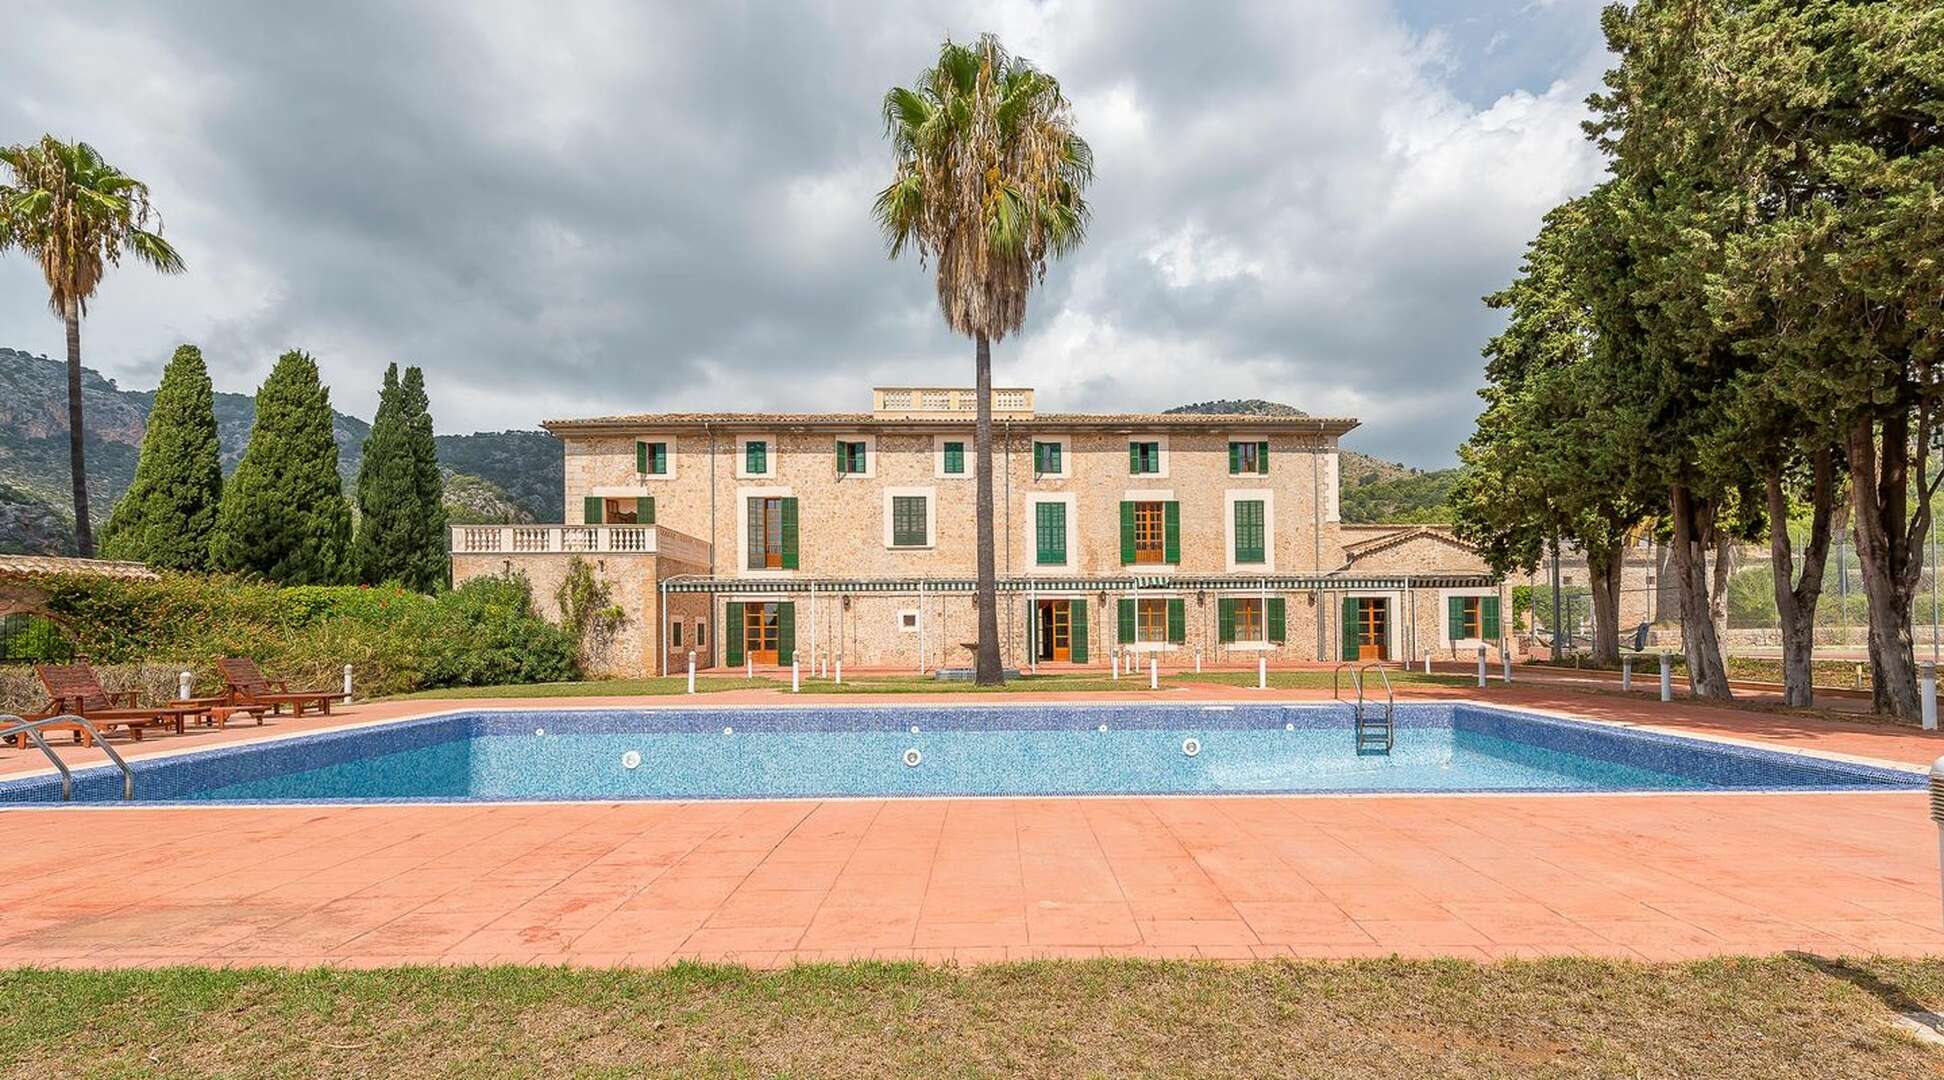 Casa senyorial amb 84 habitacions, piscina i parc a prop de Valldemossa